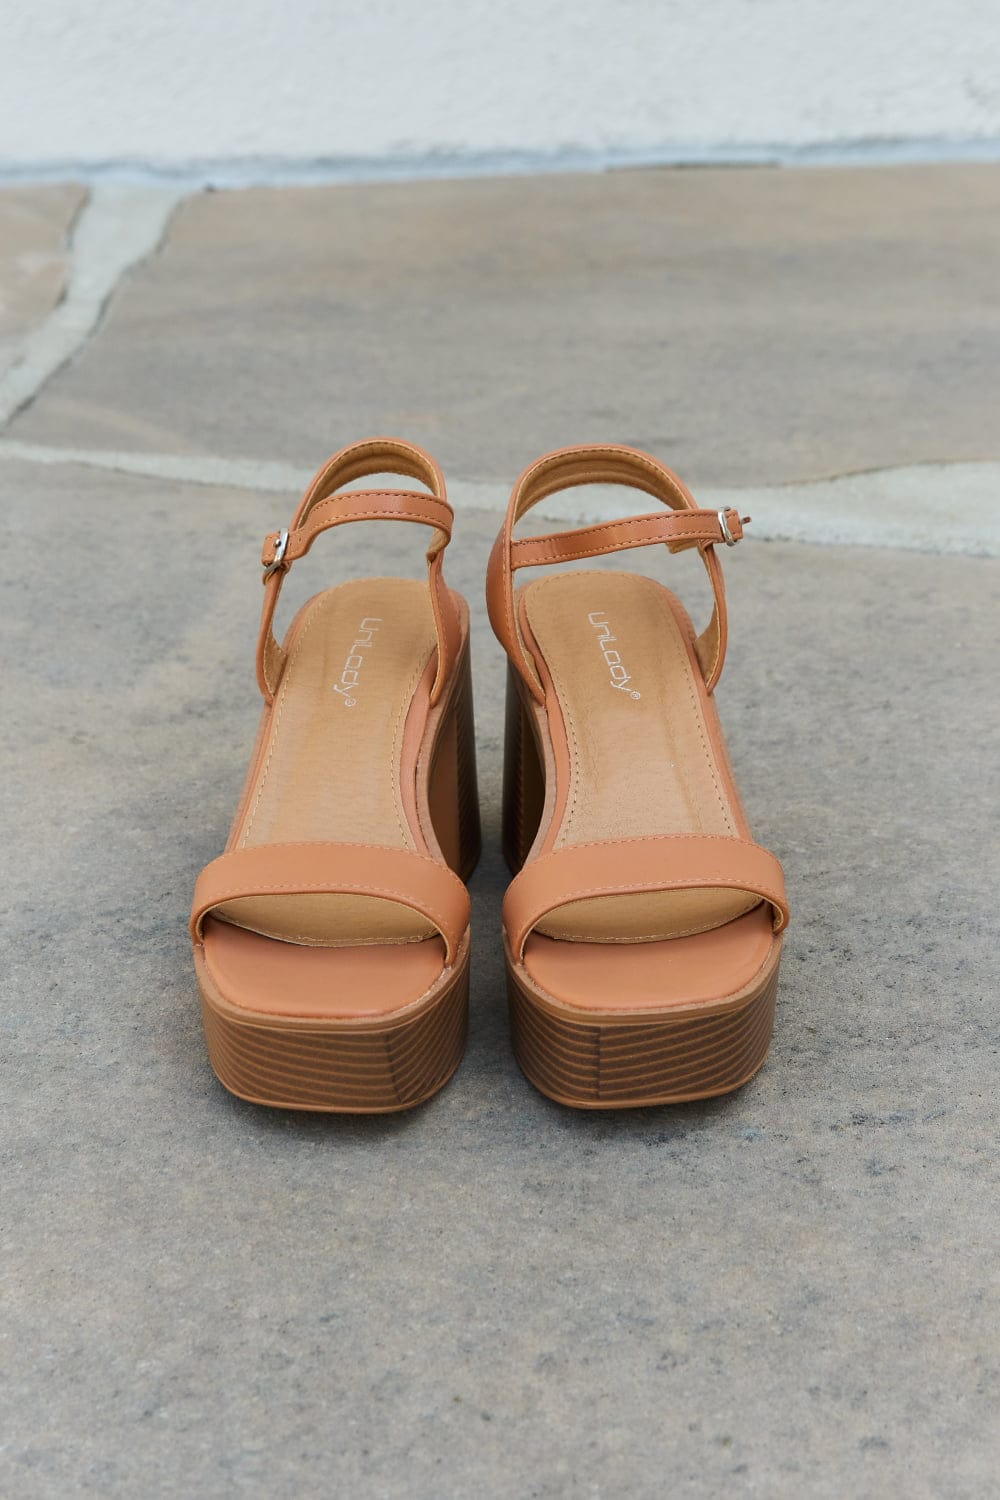 Feel It Platform Heel Sandals - Body By J'ne